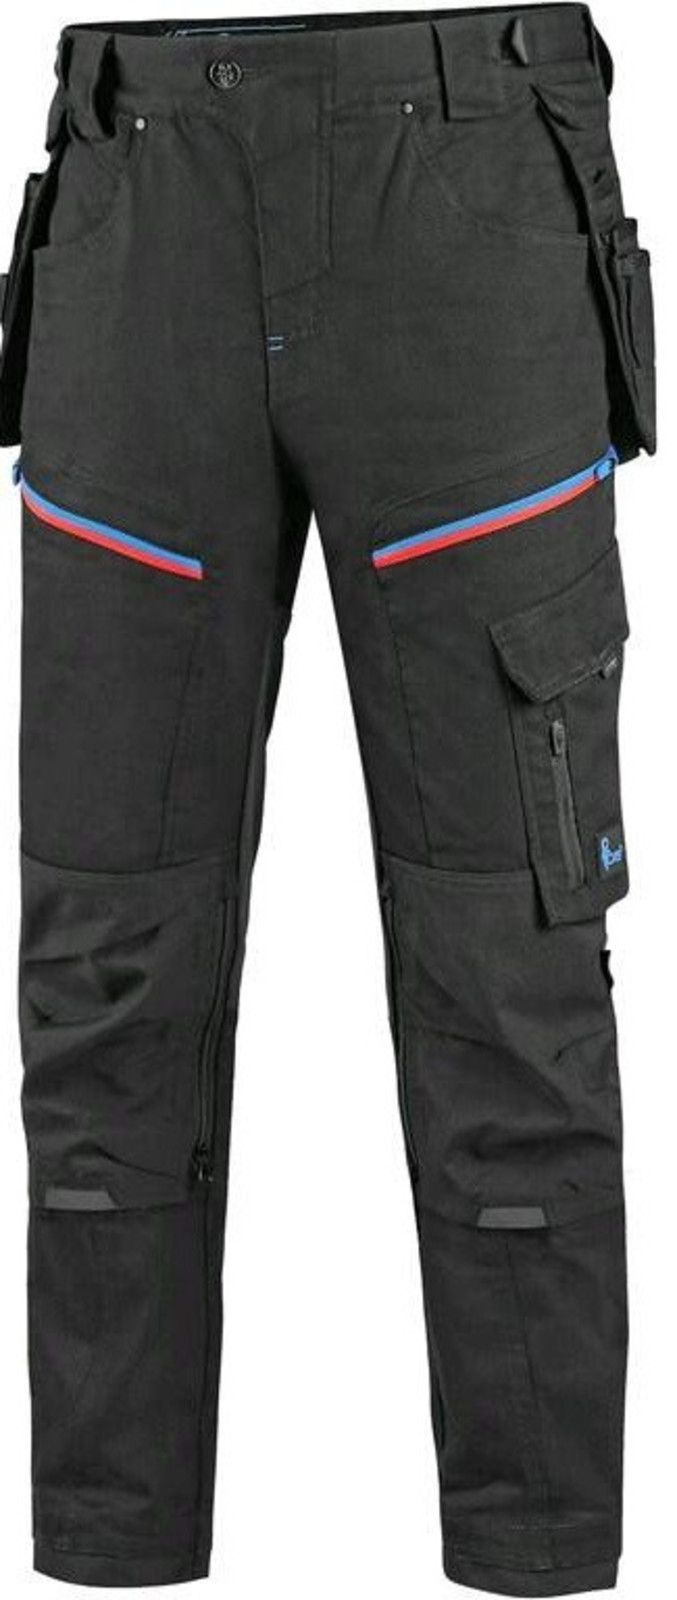 Pánske pracovné nohavice CXS Leonis - veľkosť: 64, farba: čierna/modrá